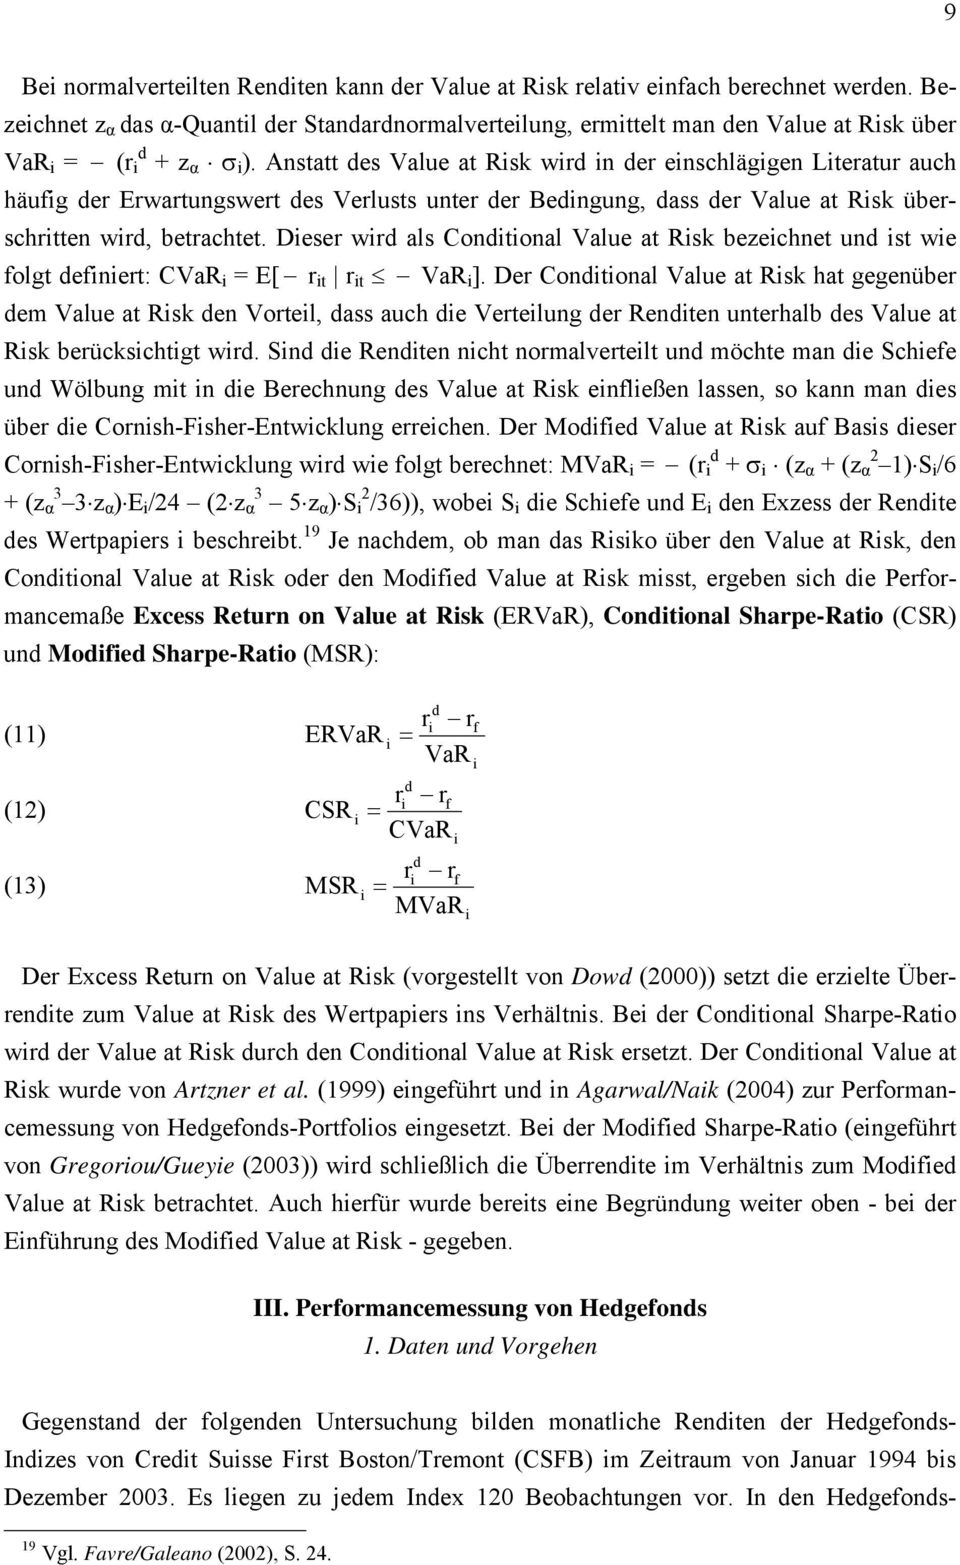 Deser wrd als Condtonal Value at Rsk bezechnet und st we folgt defnert: CVaR = E[ r t r t VaR ].